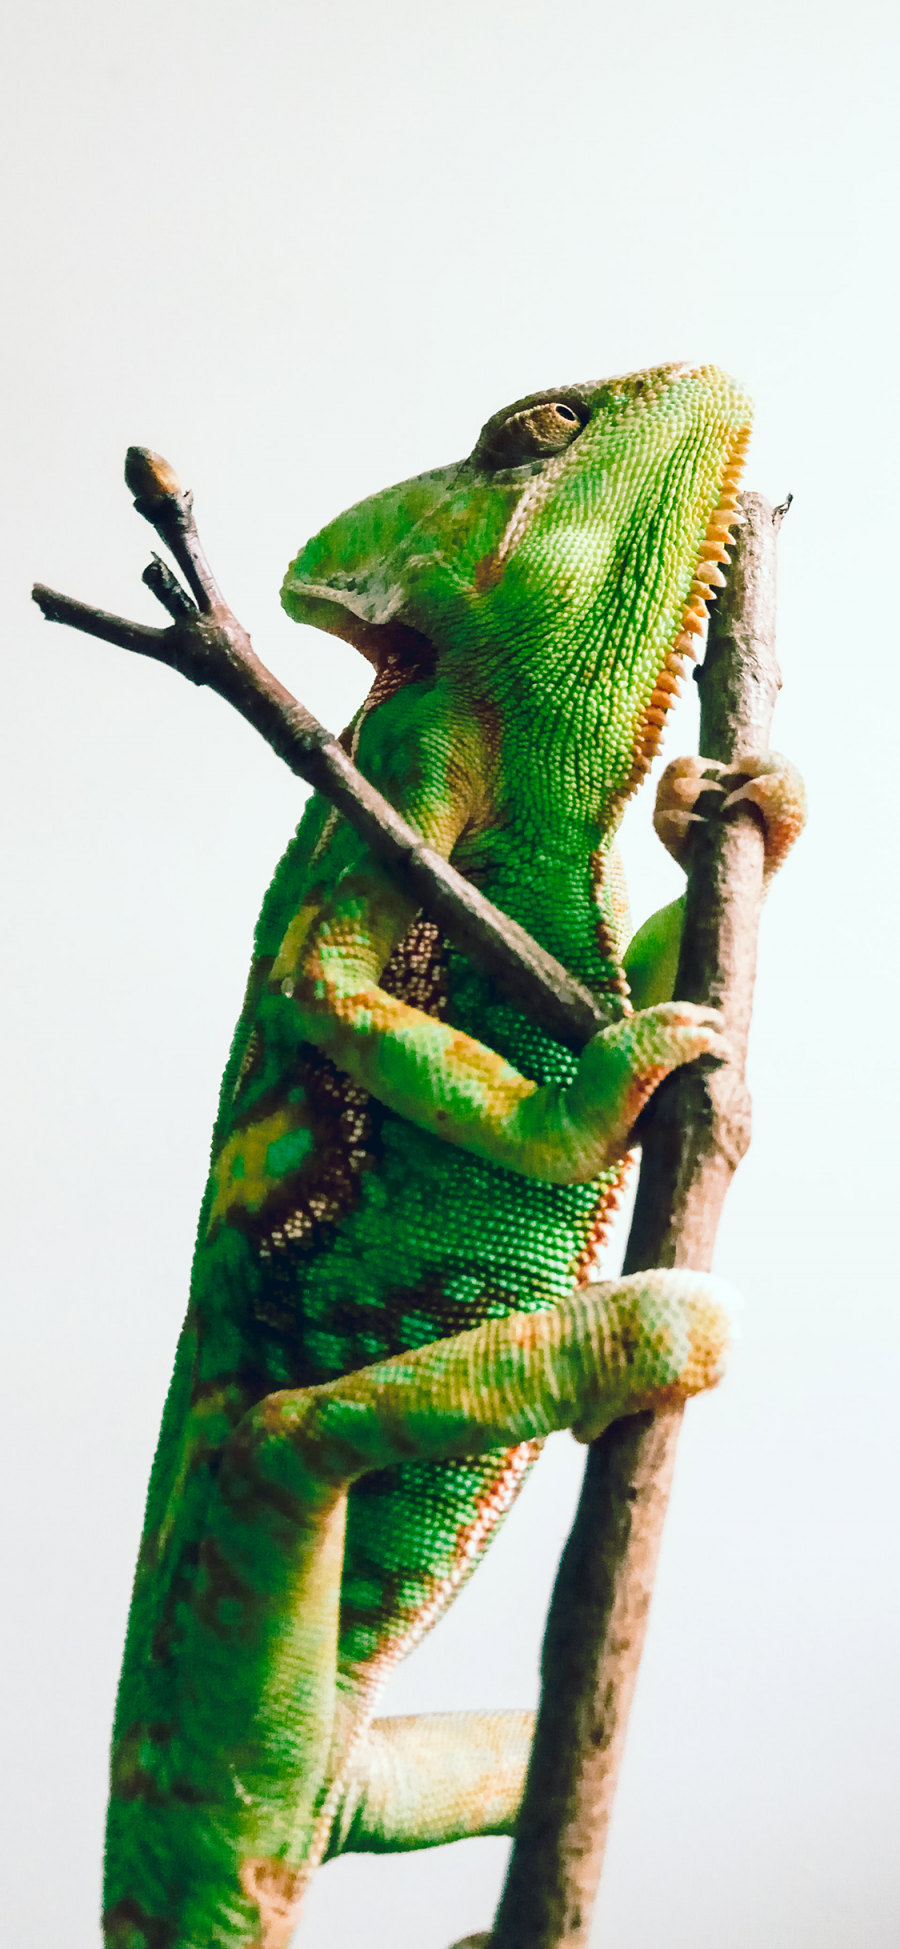 [2436×1125]变色龙 蜥蜴 枝干 爬行 绿色 苹果手机壁纸图片